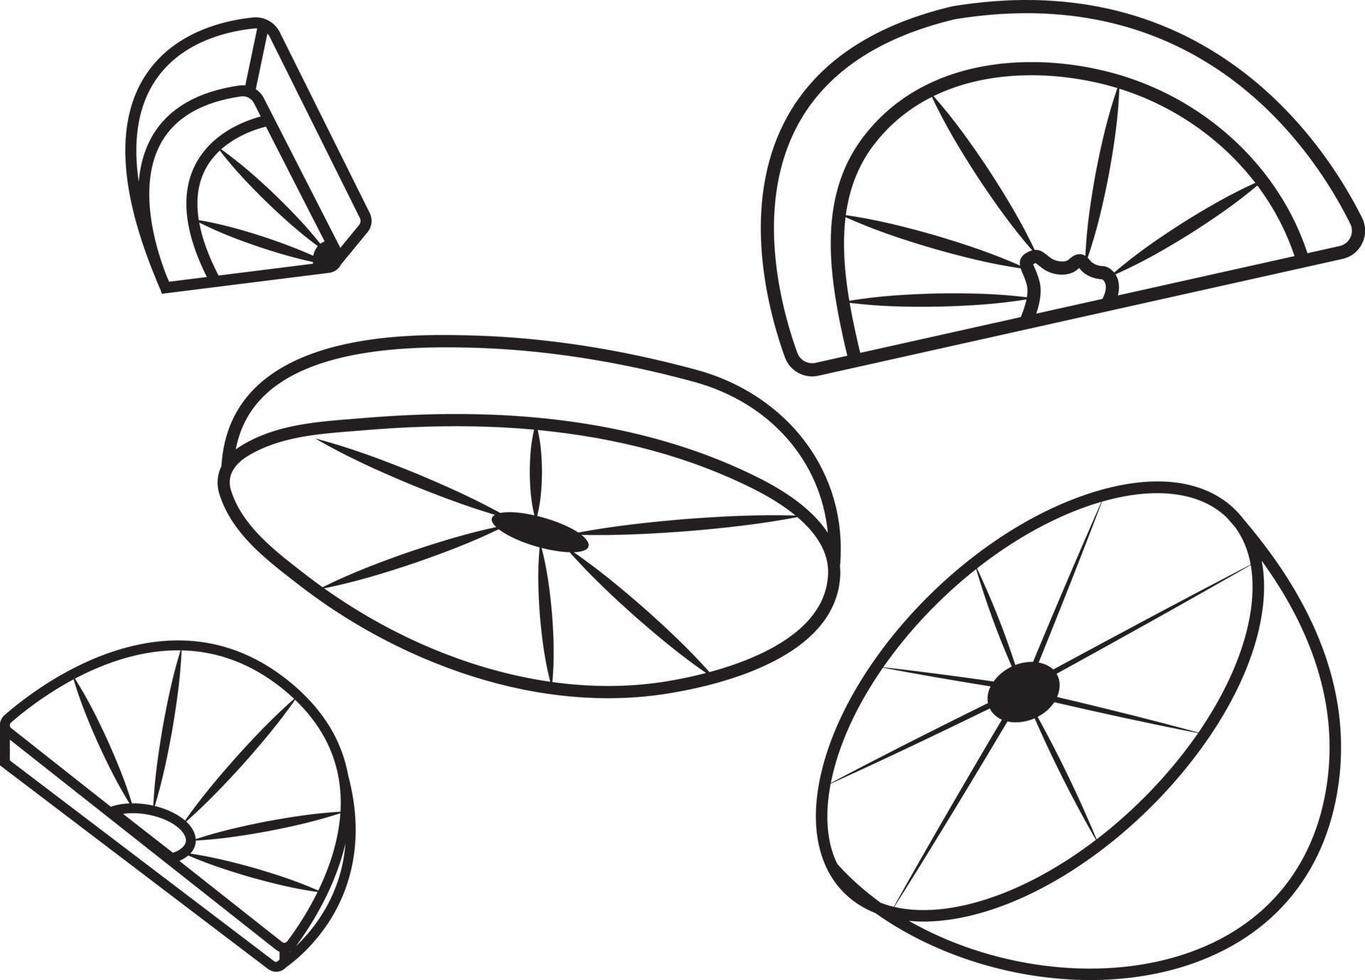 oranje of citroen in vijf vormen. vector illustratie